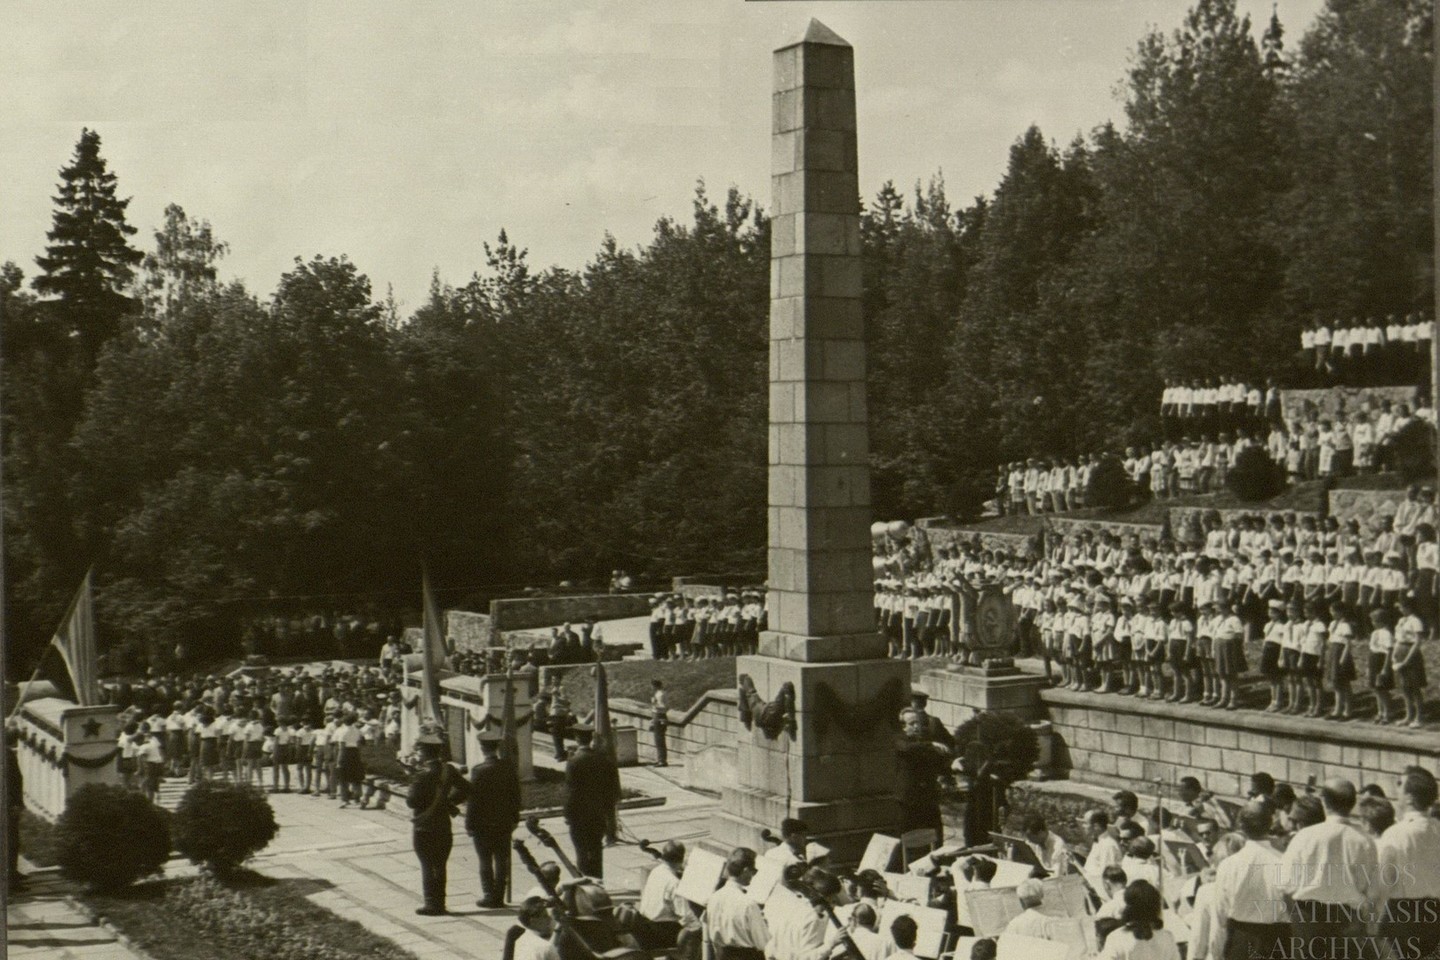 Raudonosios armijos įžengimo į Lietuvą 1944 m. metinių minėjimas Vilniaus Antakalnio karių kapinėse. 1964 m.<br>Lietuvos ypatingojo archyvo nuotr.